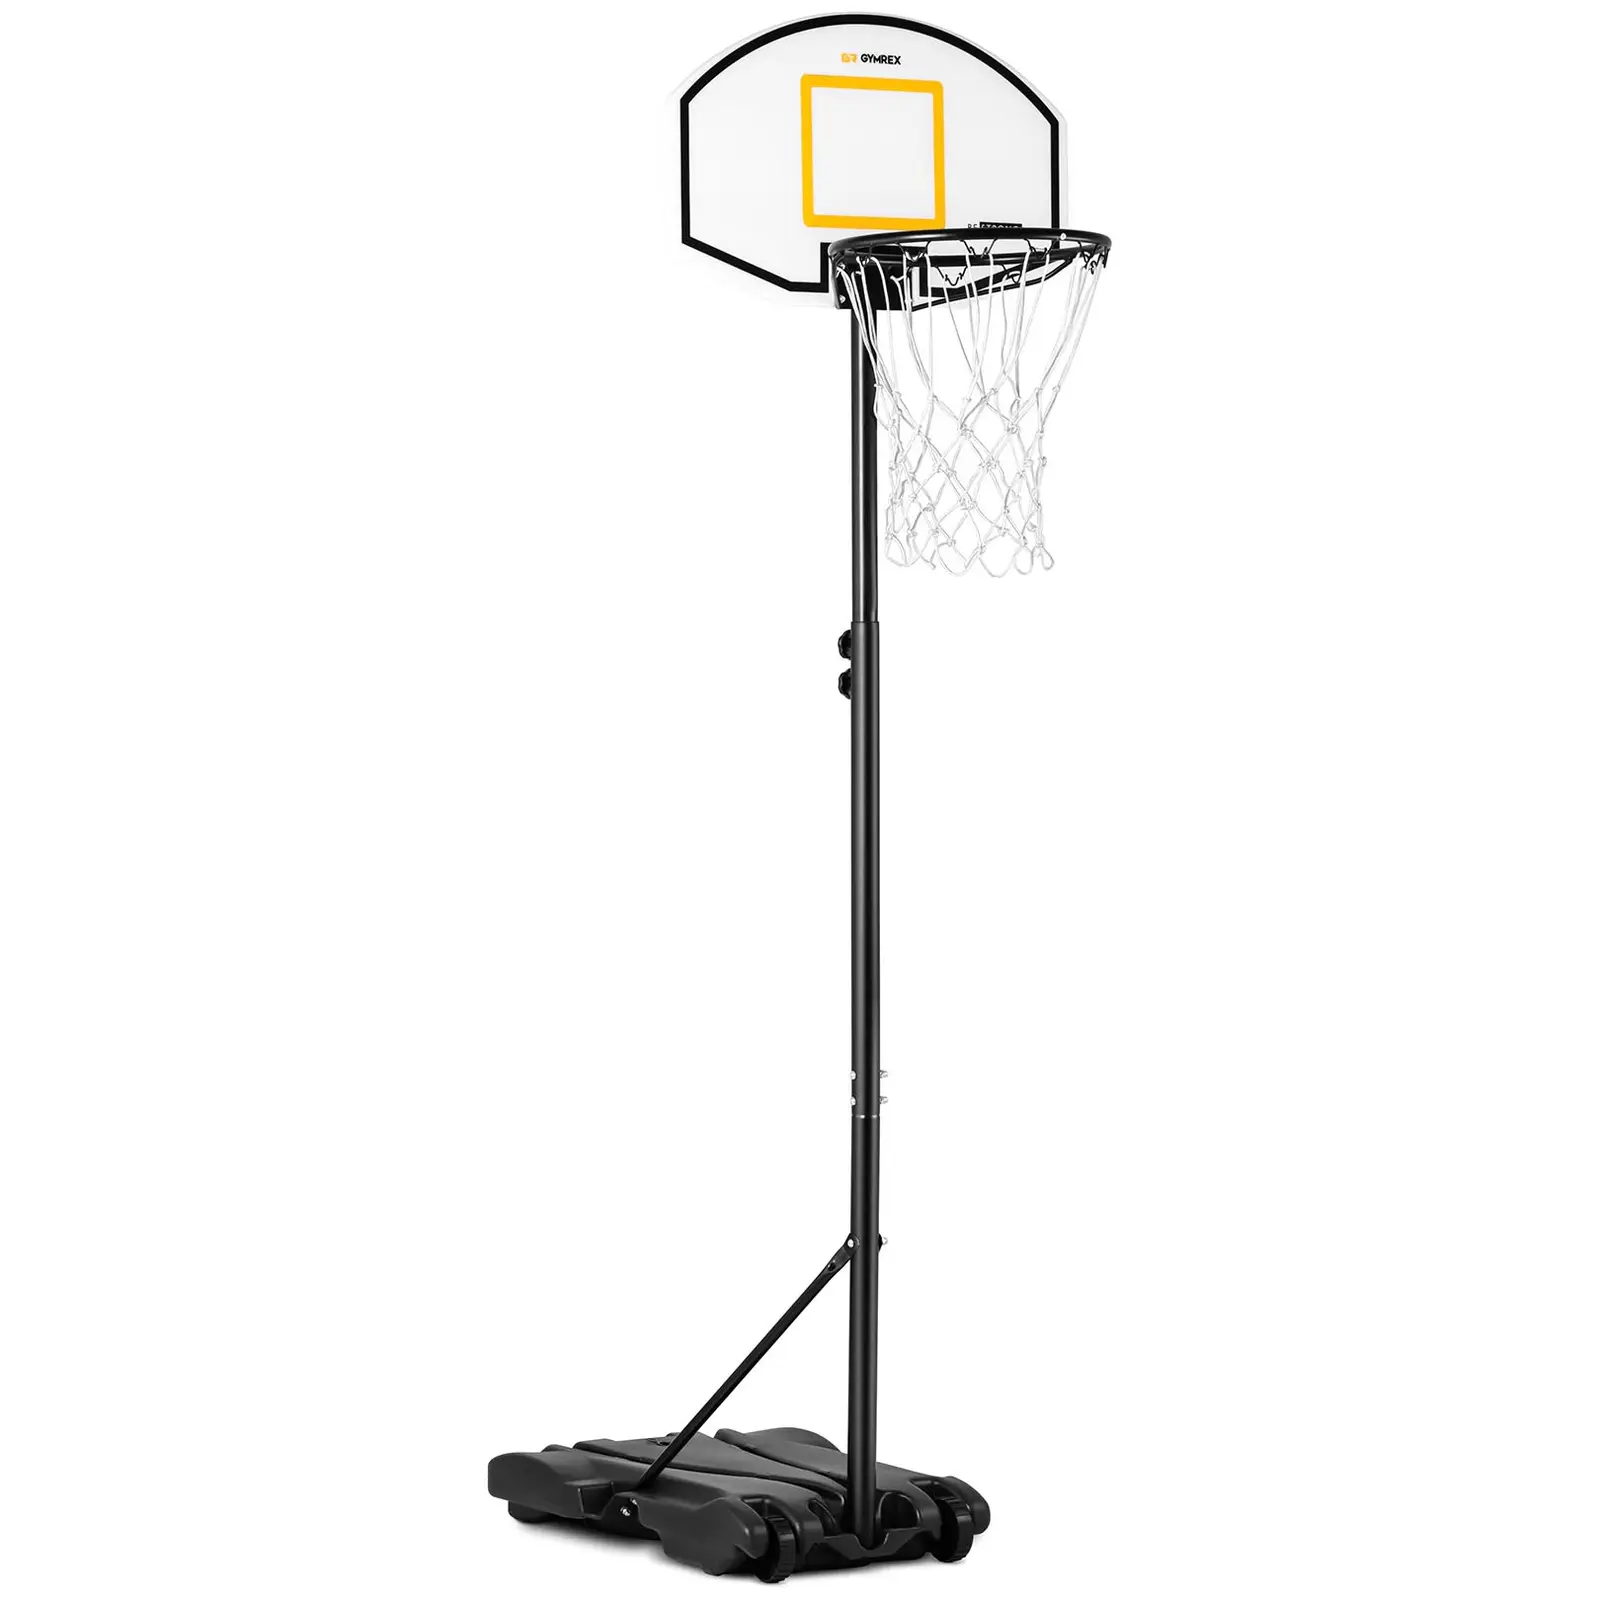 Canestro basket regolabile in altezza per bambini - Base mobile con ruote - Da 178 a 205 cm